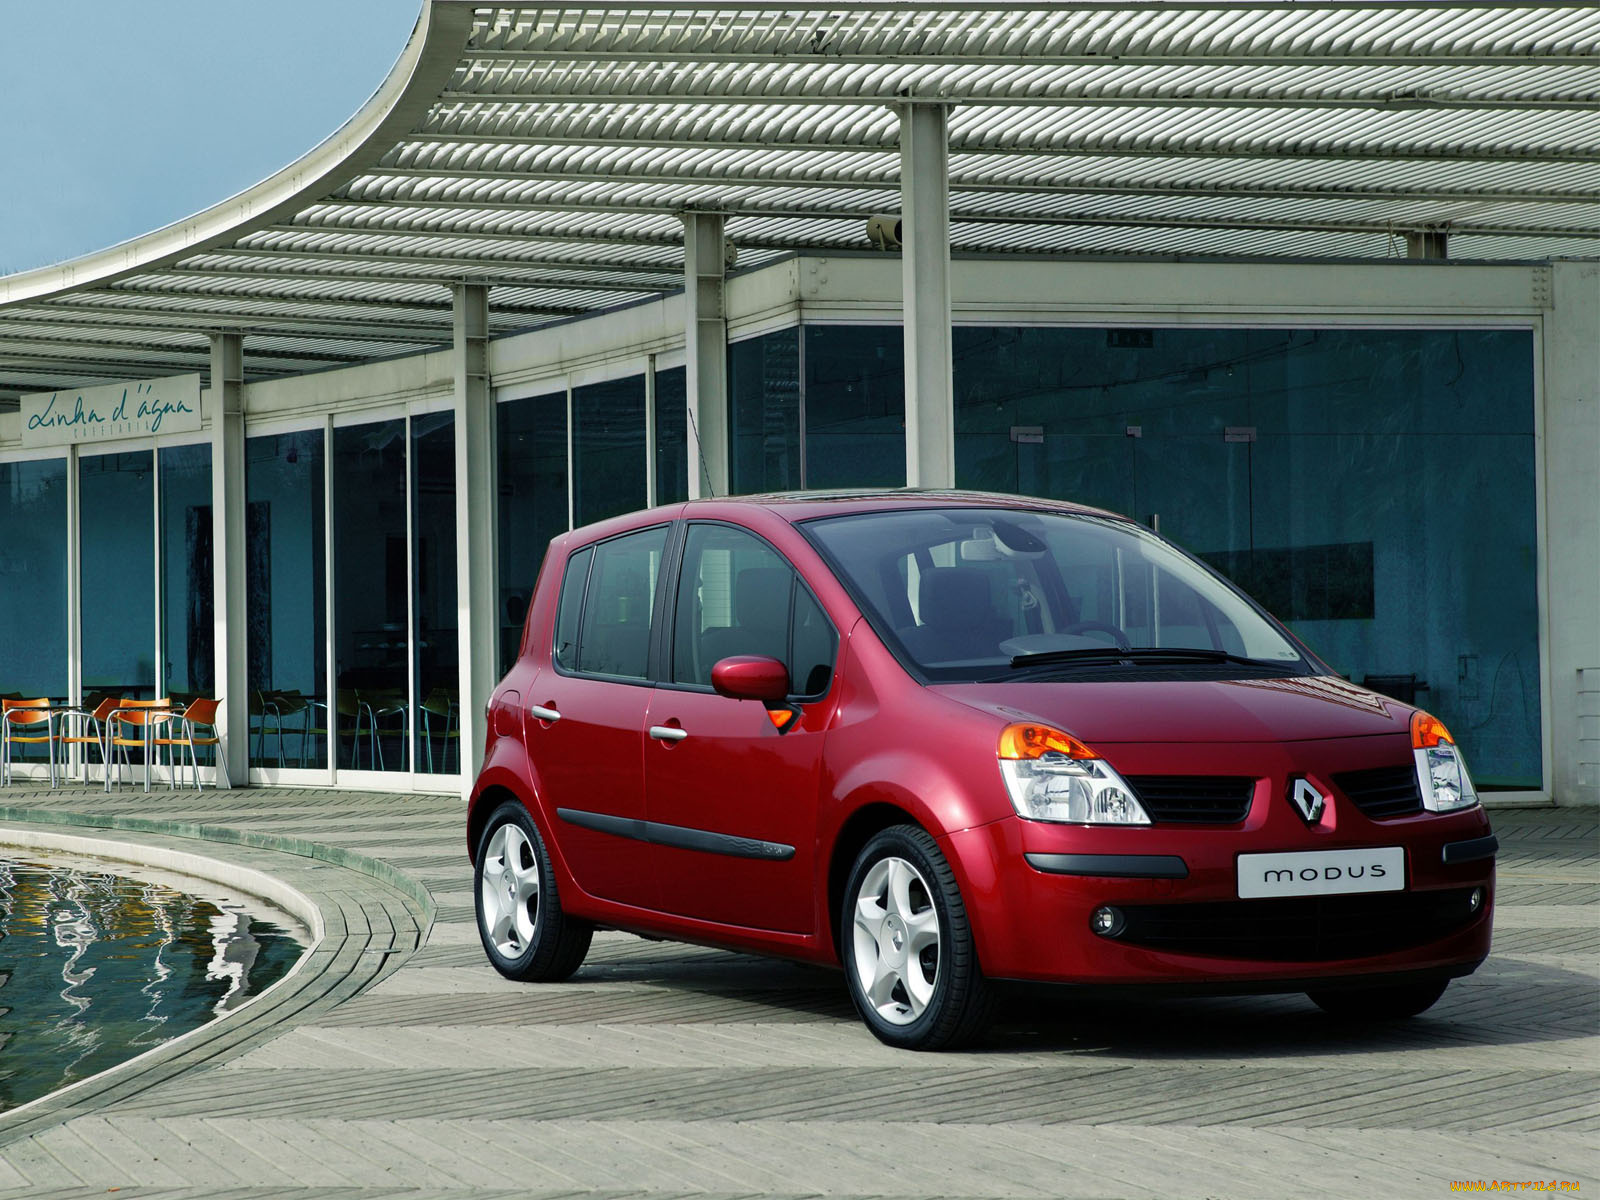 Марки автомобиля рено: Автомобили Renault - модельный ряд, характеристики и комплектации